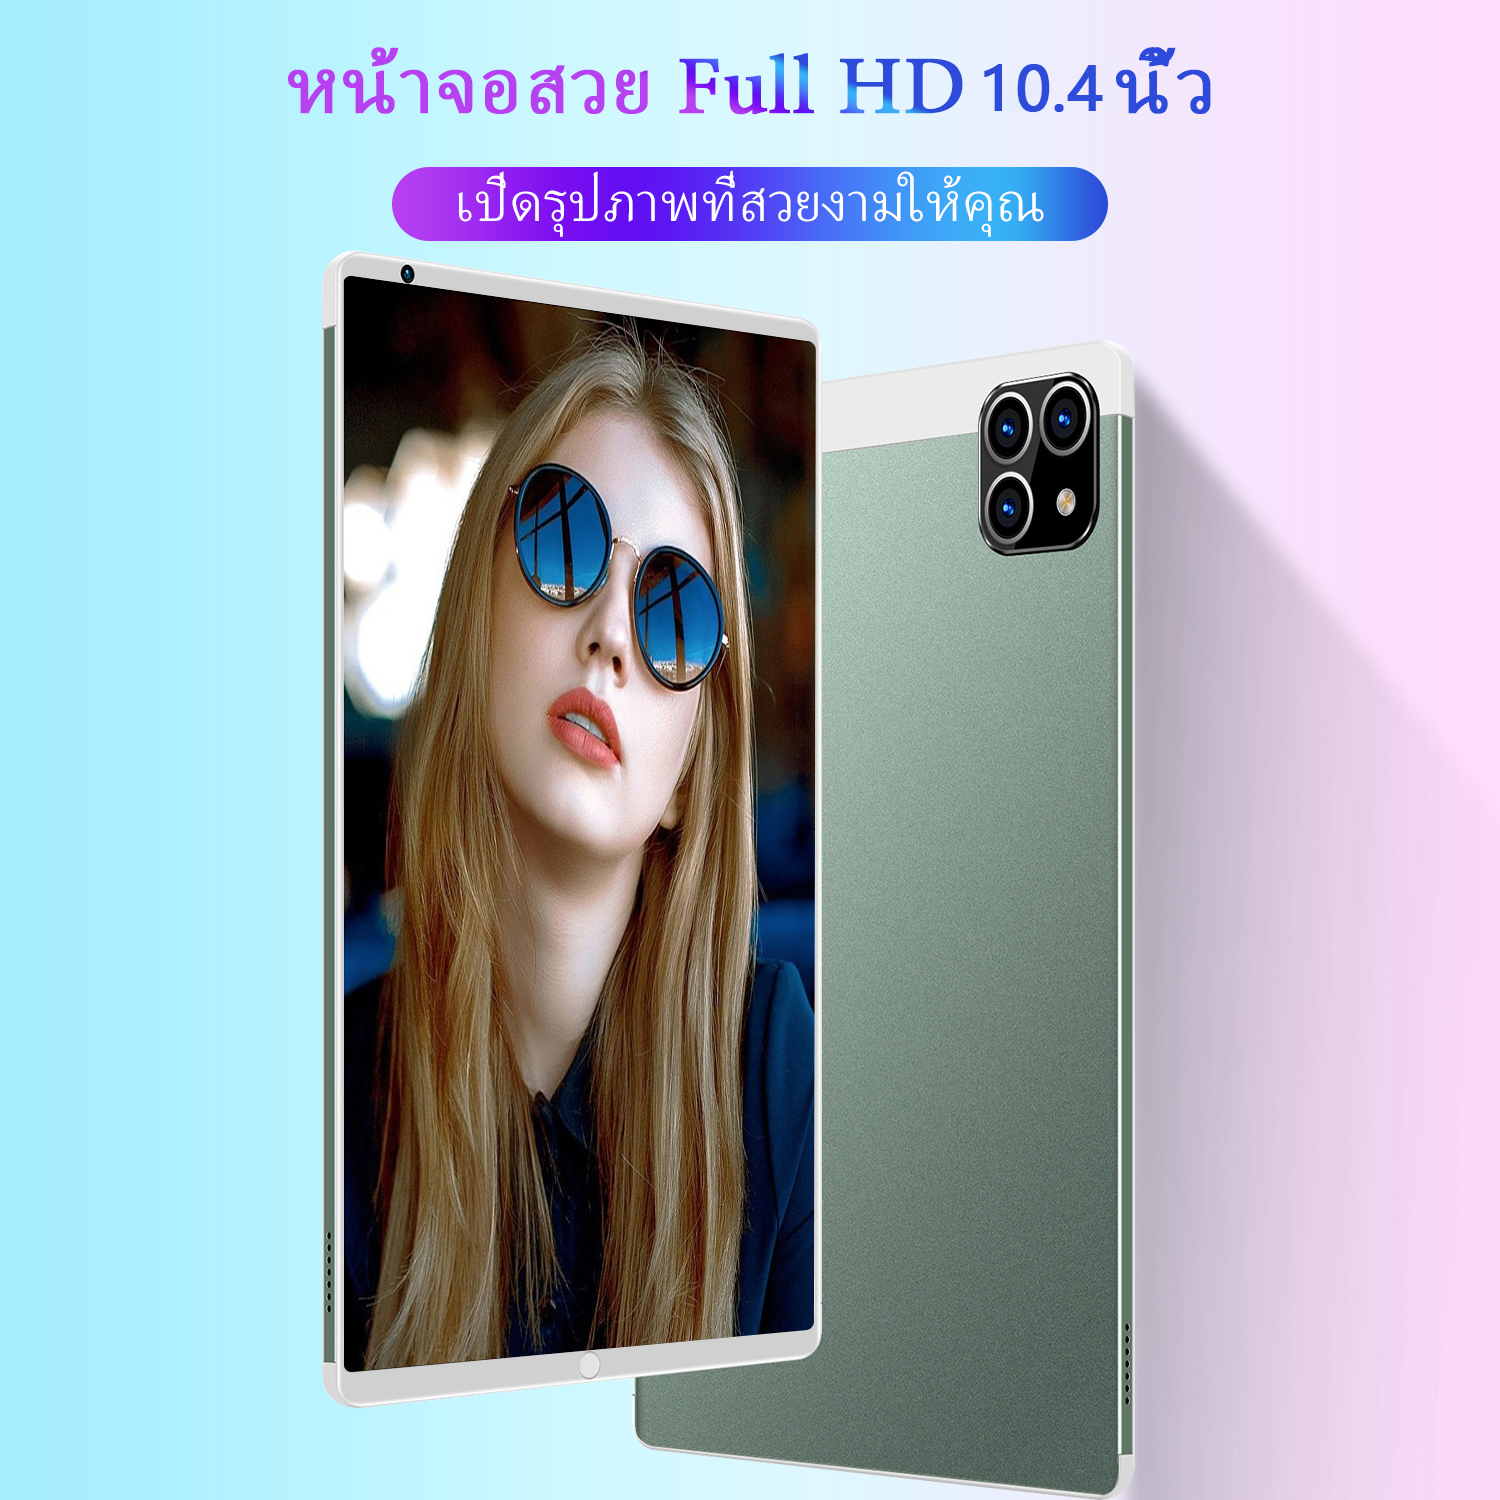 รูปภาพเพิ่มเติมของ 【ซื้อ 1 แถม 1】ใหม่ Sansumg Tab A8 แท็บเล็ต 10.4 นิ้ว Tablet Wifi 4g/5G แท็บเล็ตพีซี RAM16G ROM512G แท็บเล็ตโทรได้ รองรับ 2 ซิมการ์ด Andorid11.0 Full HD 8800 mAh ไอเเพ็ด แท็บเล็ตราคาถูก ไอเเพ็ดส่งฟรี แท็บเล็ตของแท้ แท็บเล็ตราคาถูกรุ่นล่าสุด รับประกัน 1 ปี